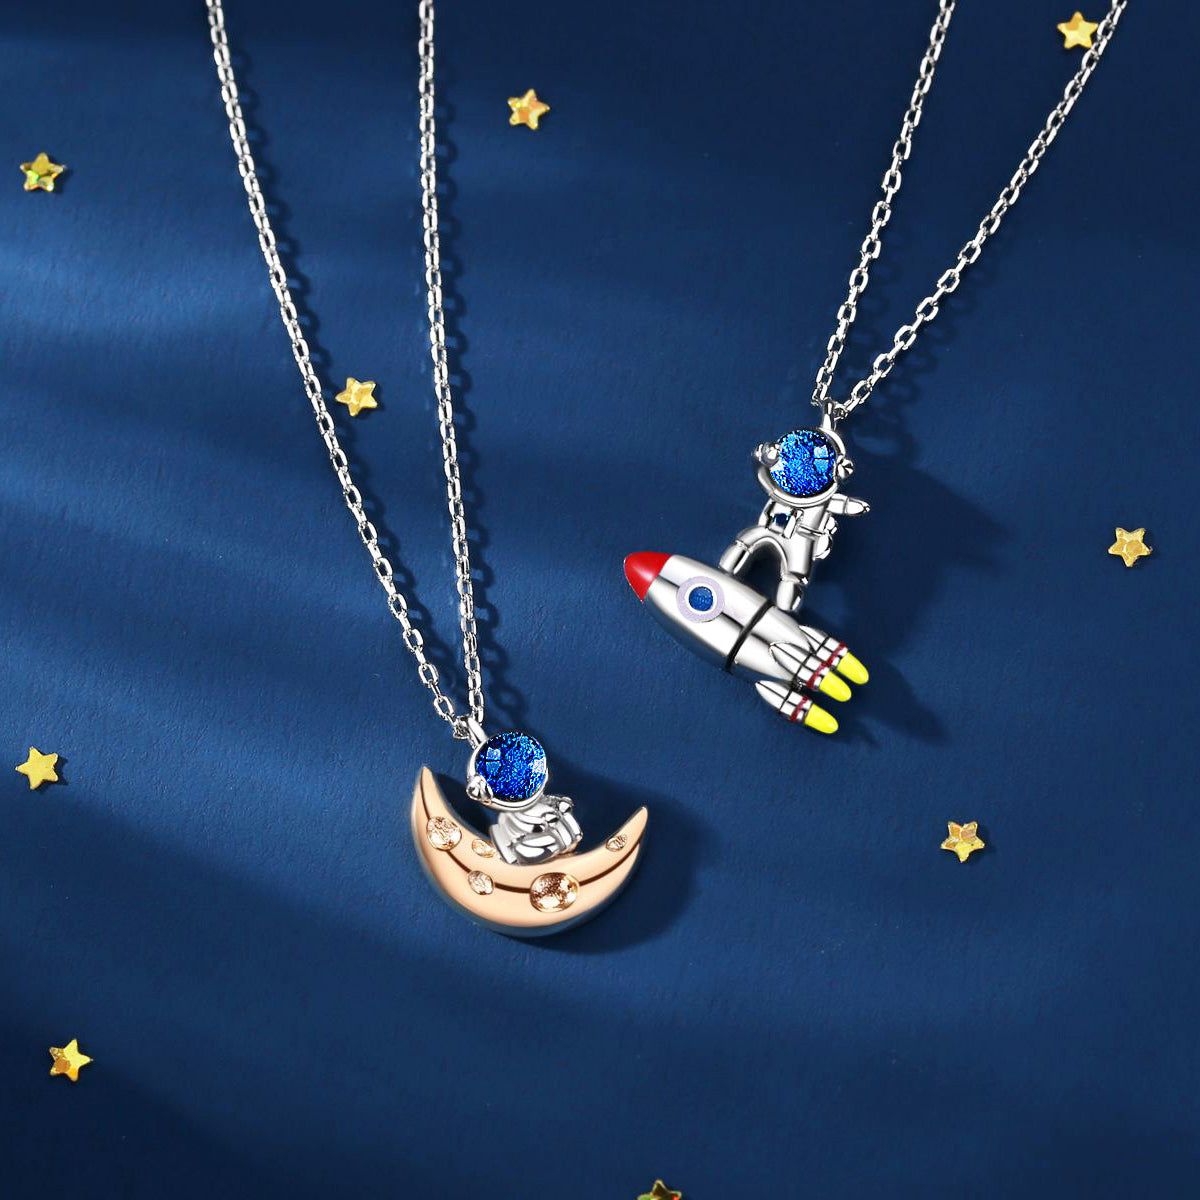 Best Friends Astronaut Pendant Necklace